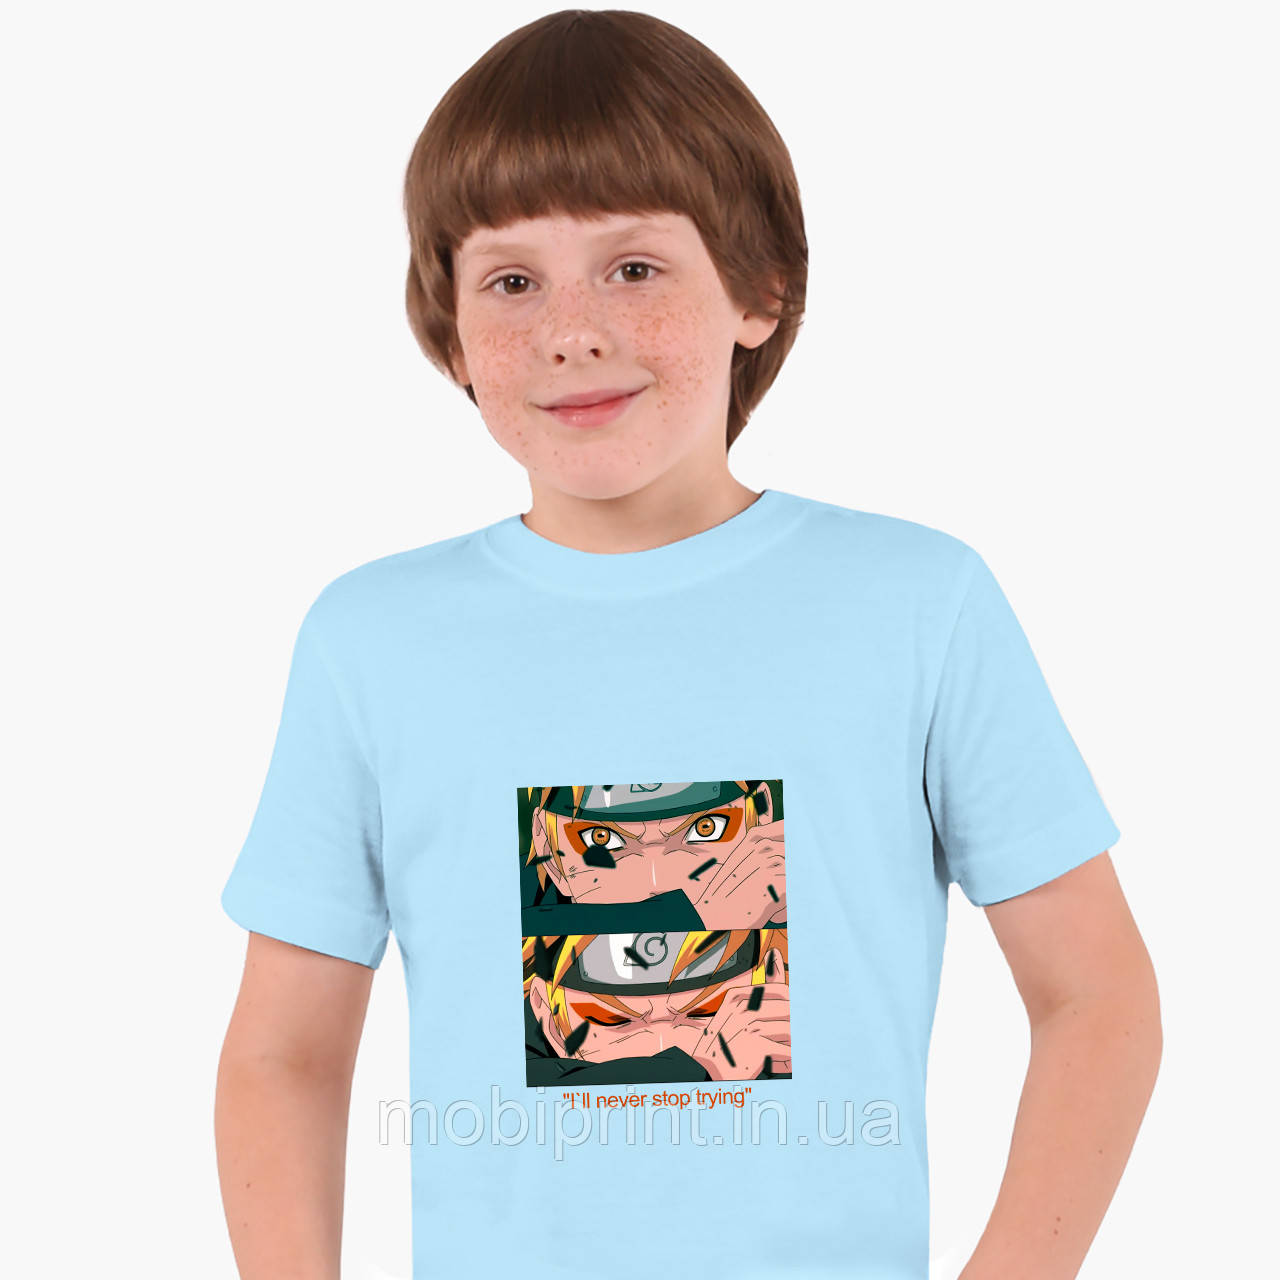 

Детская футболка для мальчиков Наруто Узумаки (Naruto Uzumaki) (25186-2816-SK) Голубой 164